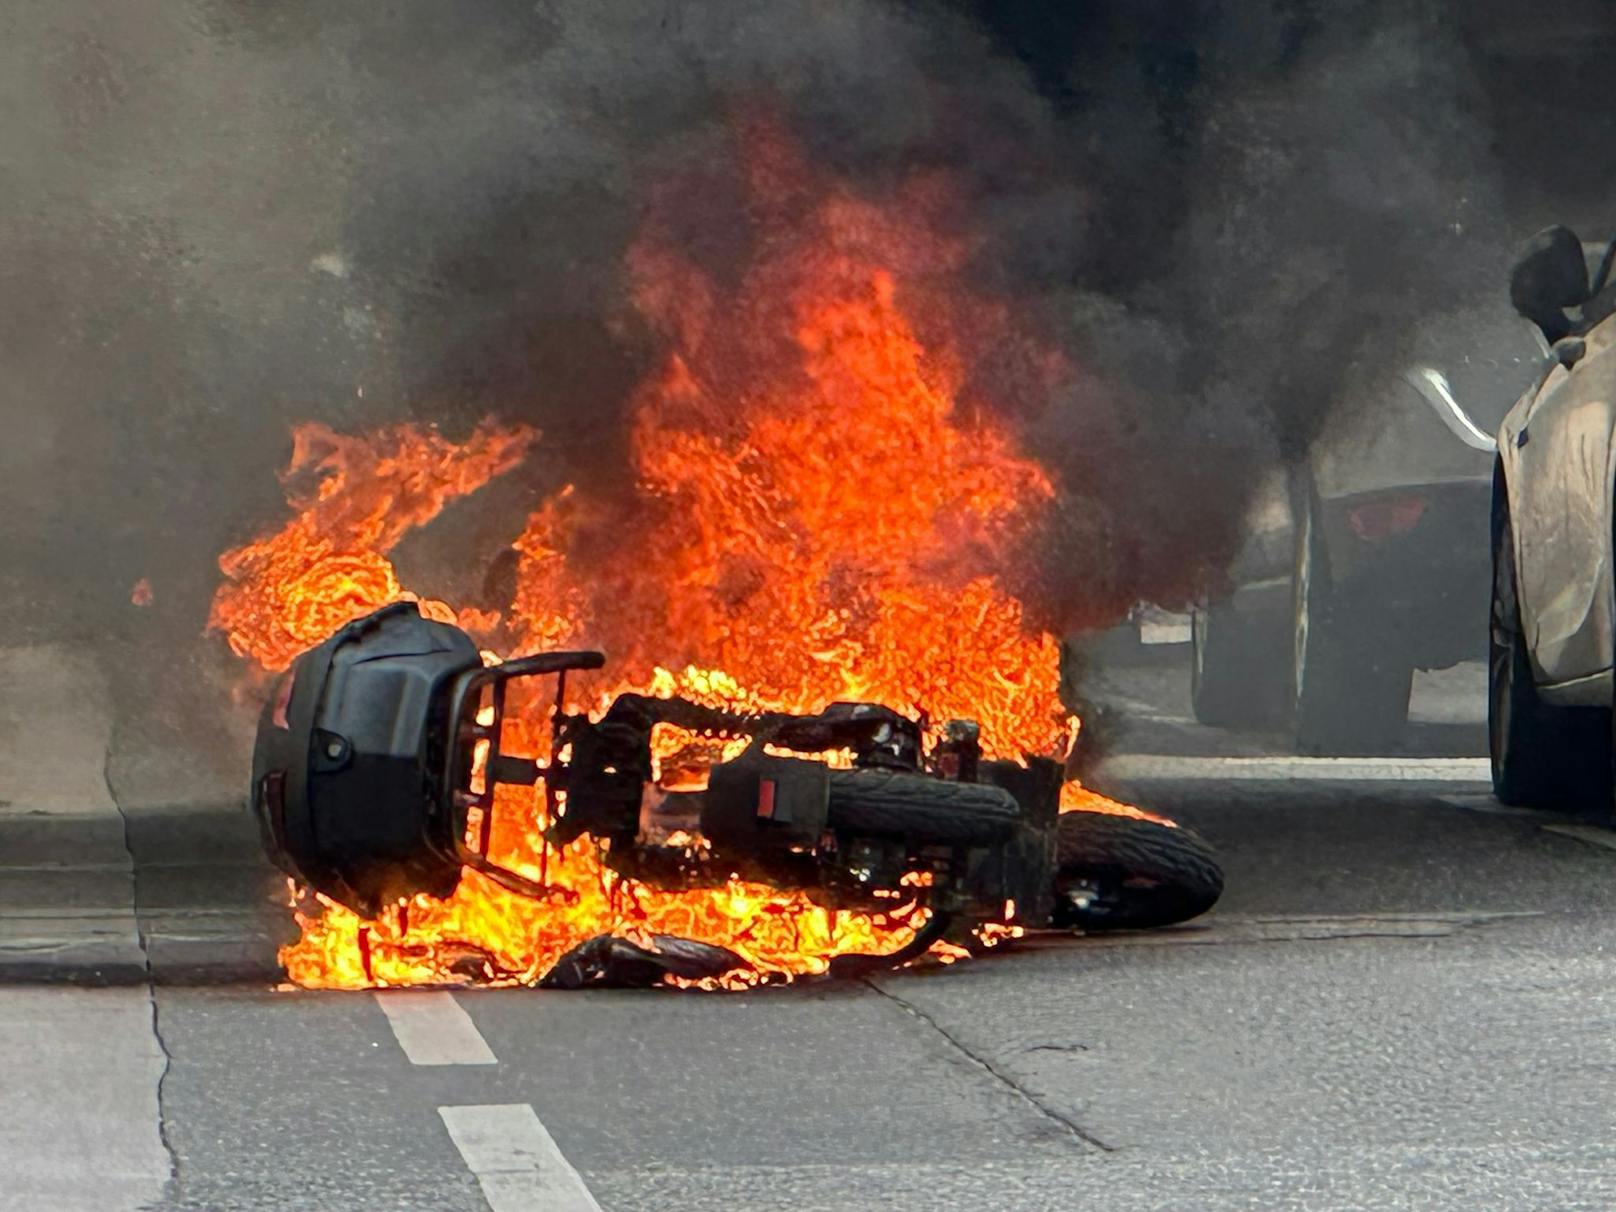 28.08.2023: <a target="_blank" href="https://www.heute.at/s/abgefackelt-e-moped-von-essensboten-geht-in-flammen-auf-100288642">Abgefackelt! E-Moped von Essensboten geht in Flammen auf</a>